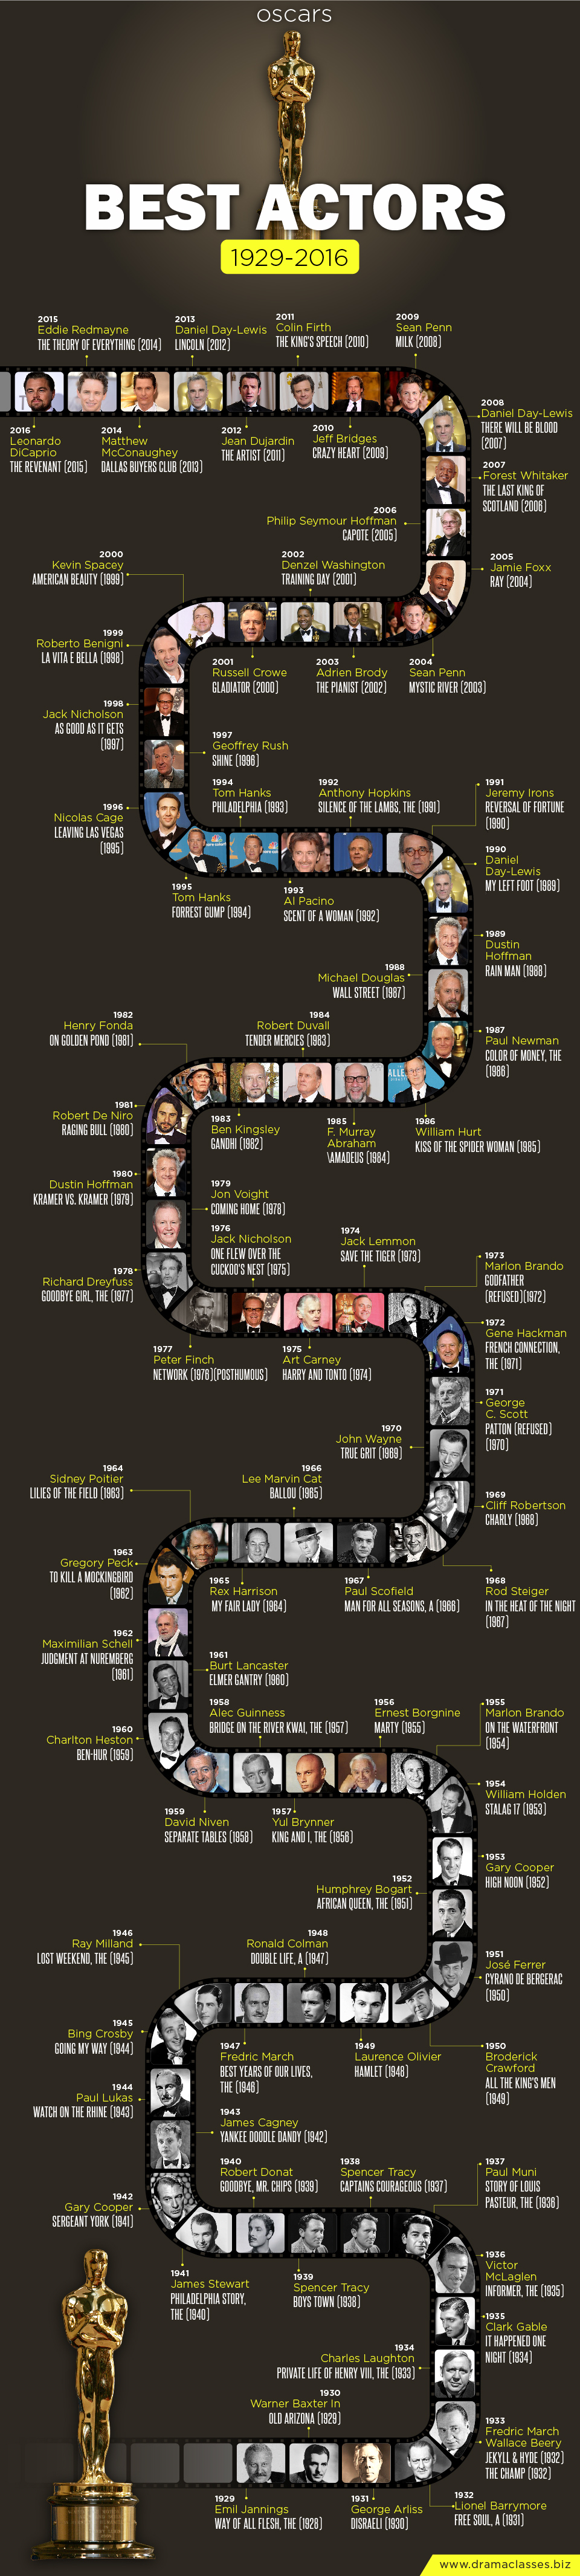 Best Actor Oscars 1929-2016